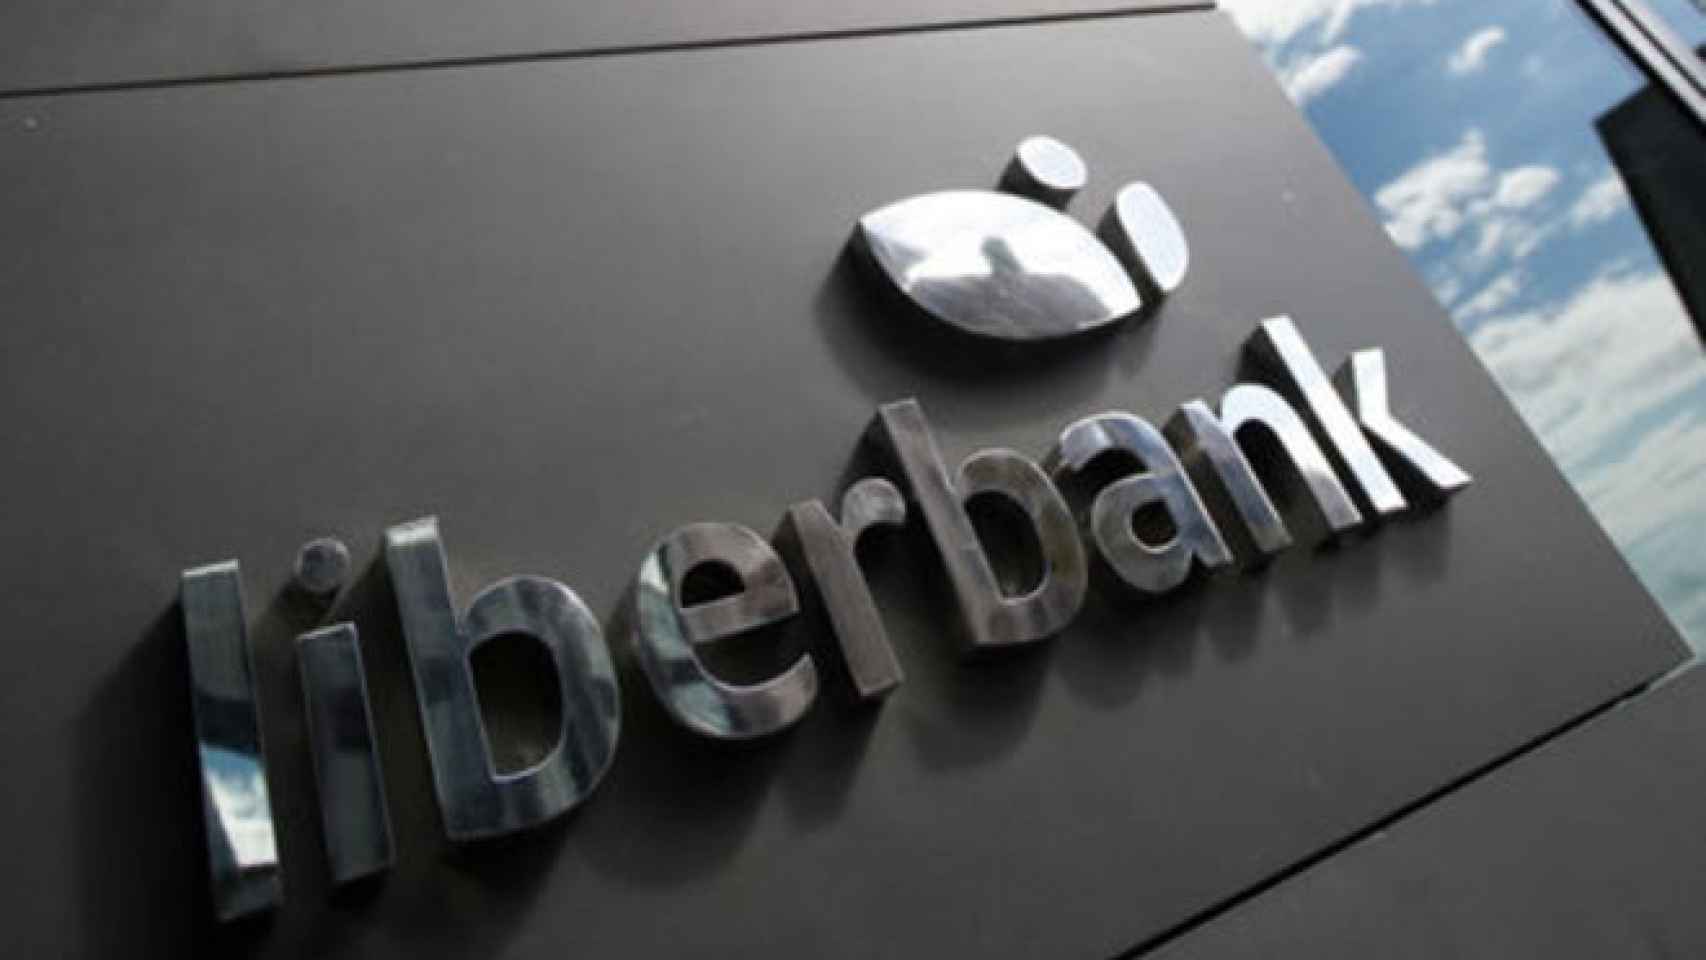 Logo de Liberbank.